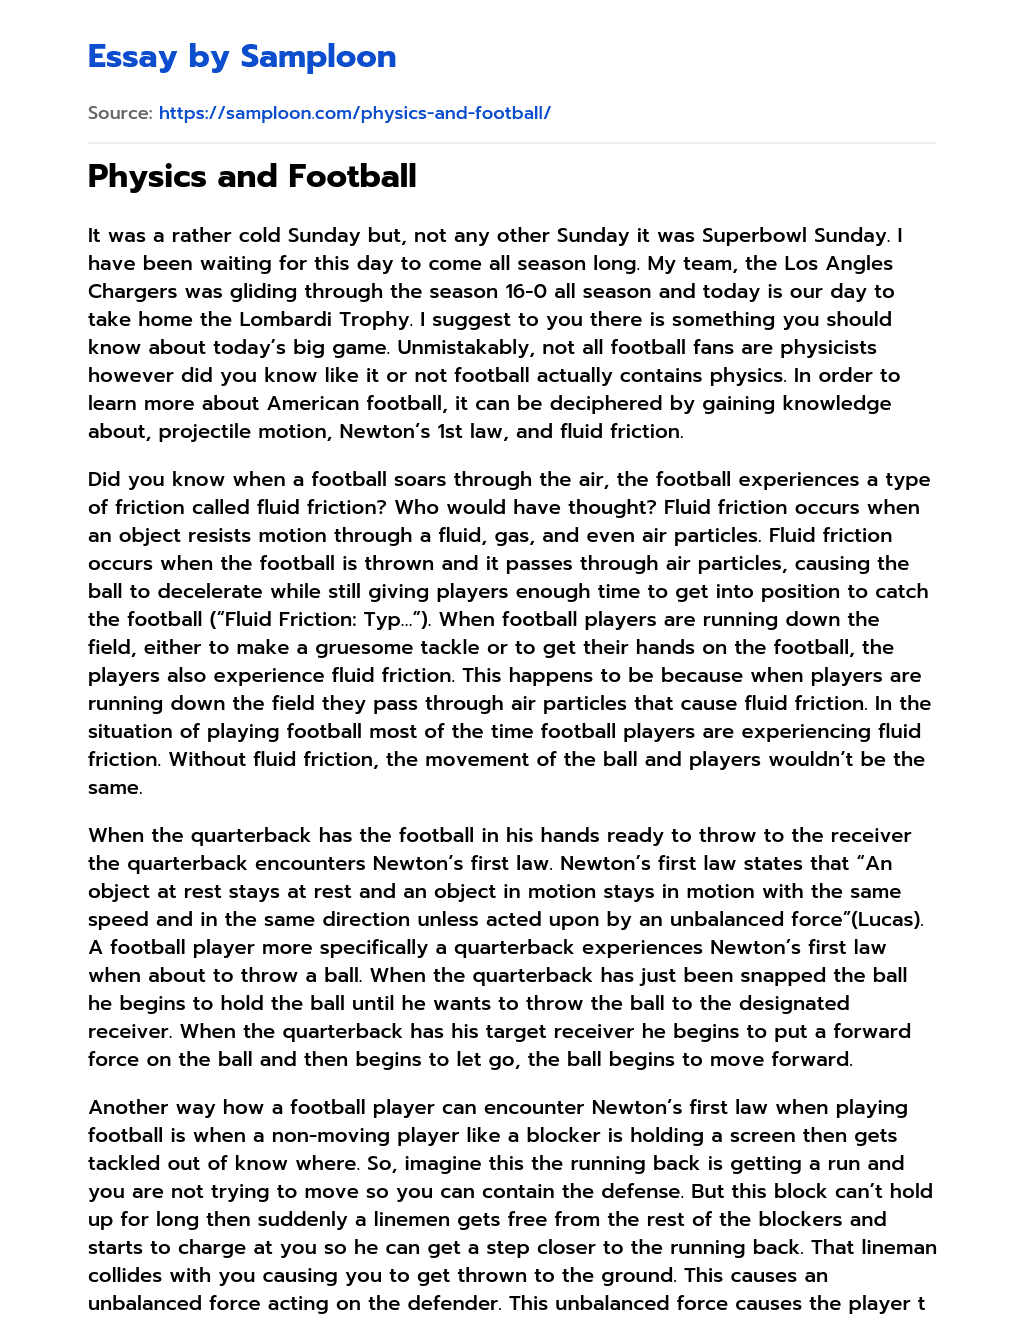 Physics and Football essay